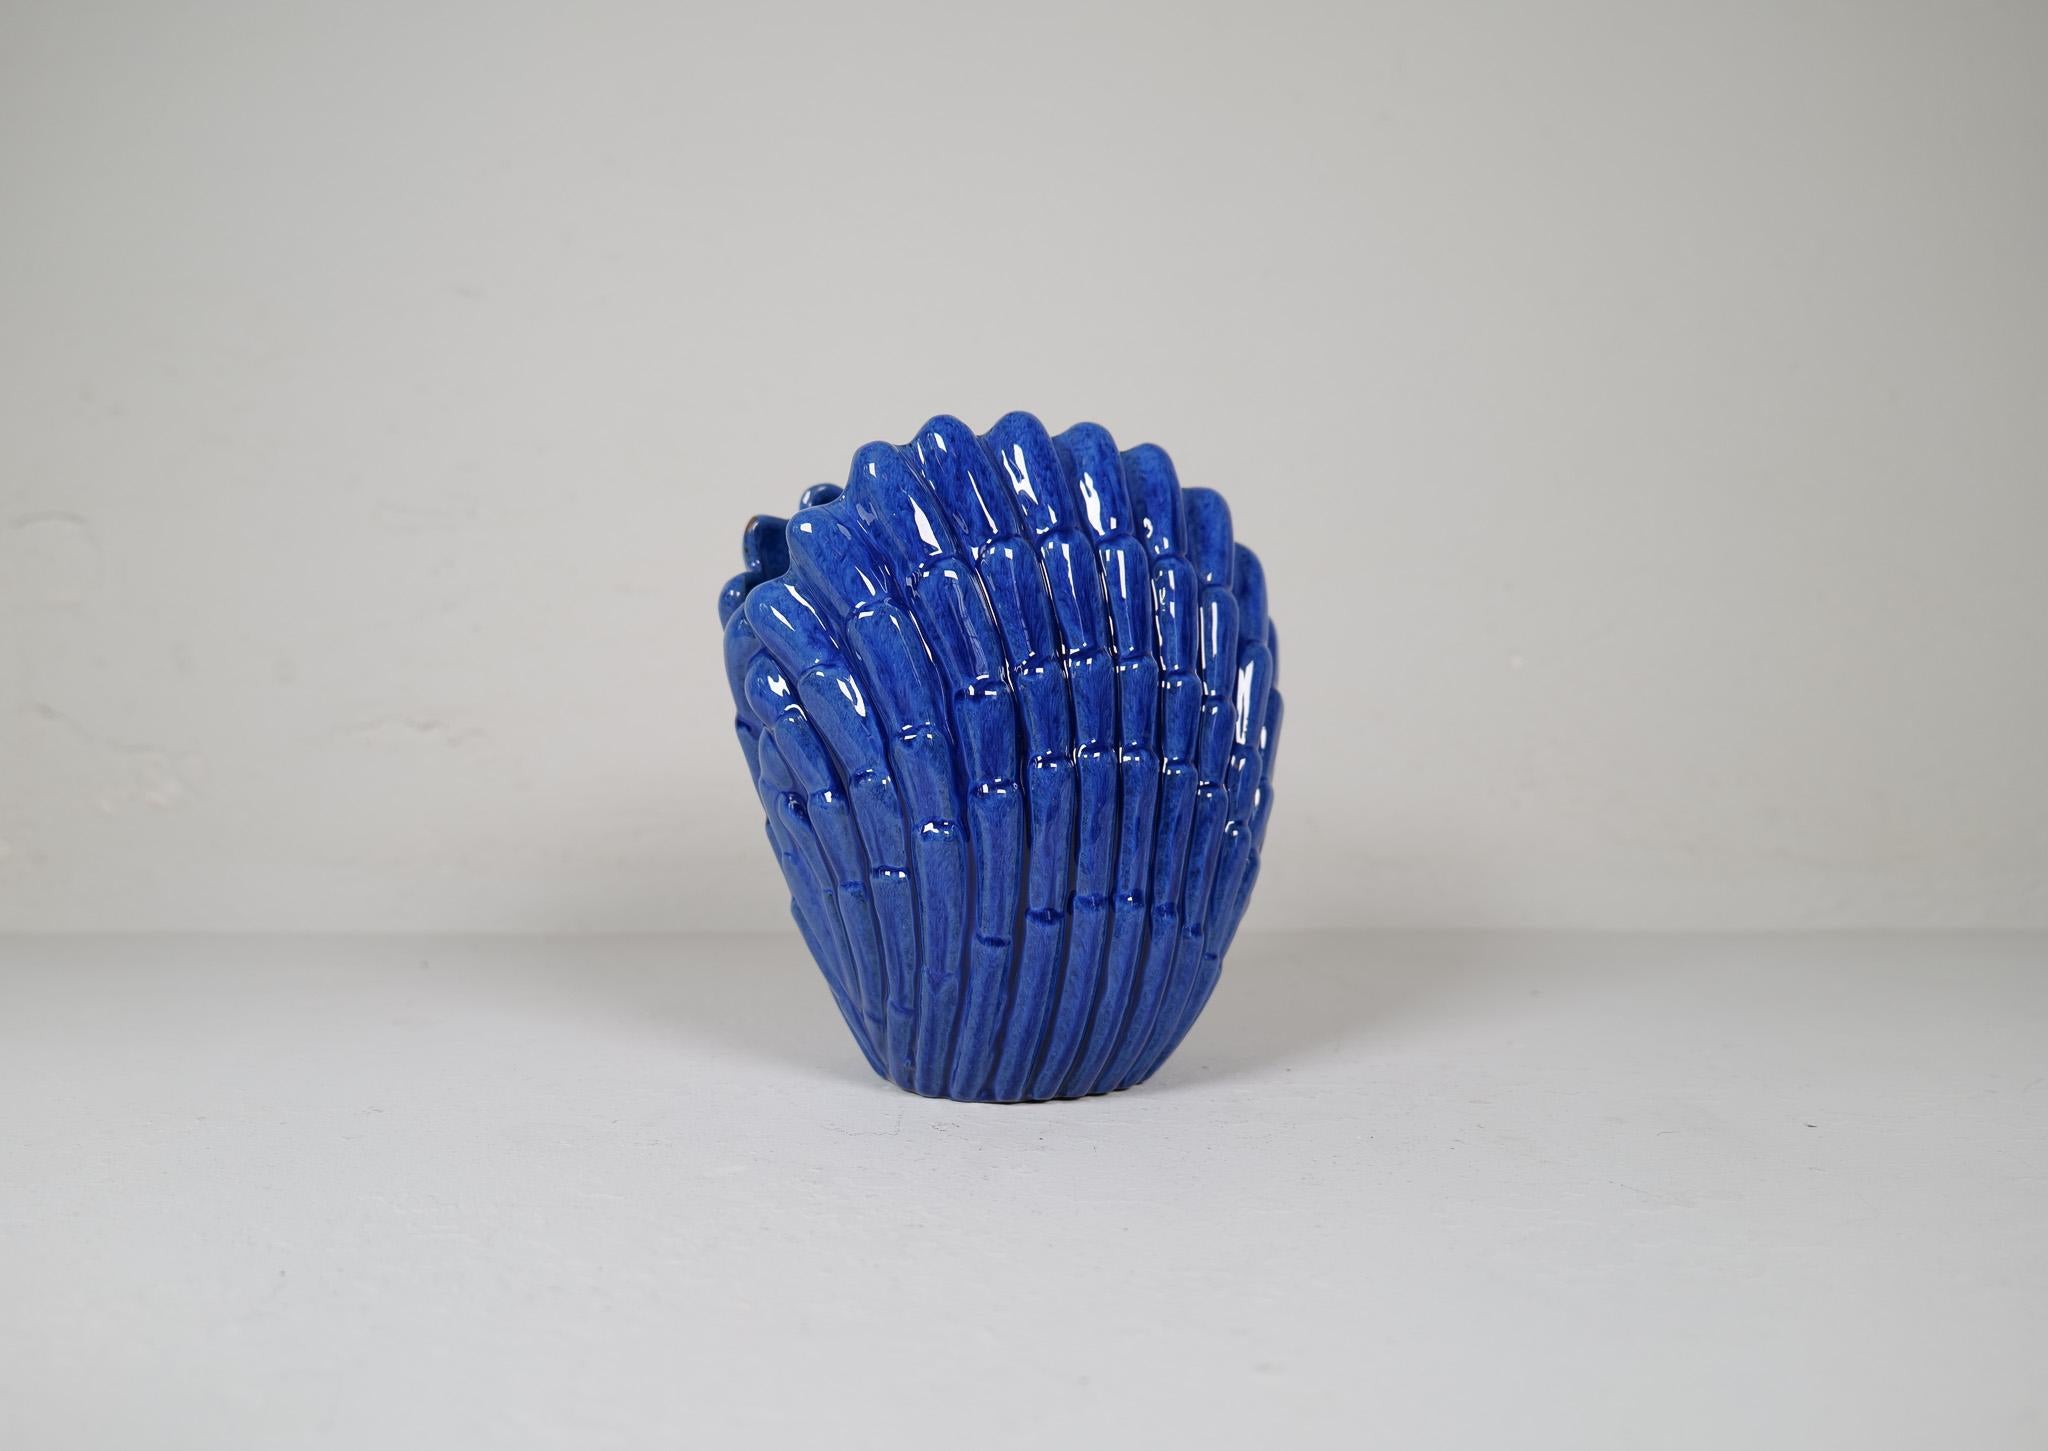 Incroyable vase créé par Vicke Lindstrand Ekeby, Suède, à la fin des années 1940. Le vase en forme de coquillage est fabriqué en céramique et est recouvert d'une magnifique glaçure bleue qui recouvre sa céramique sculptée artistique. 

Très bon état